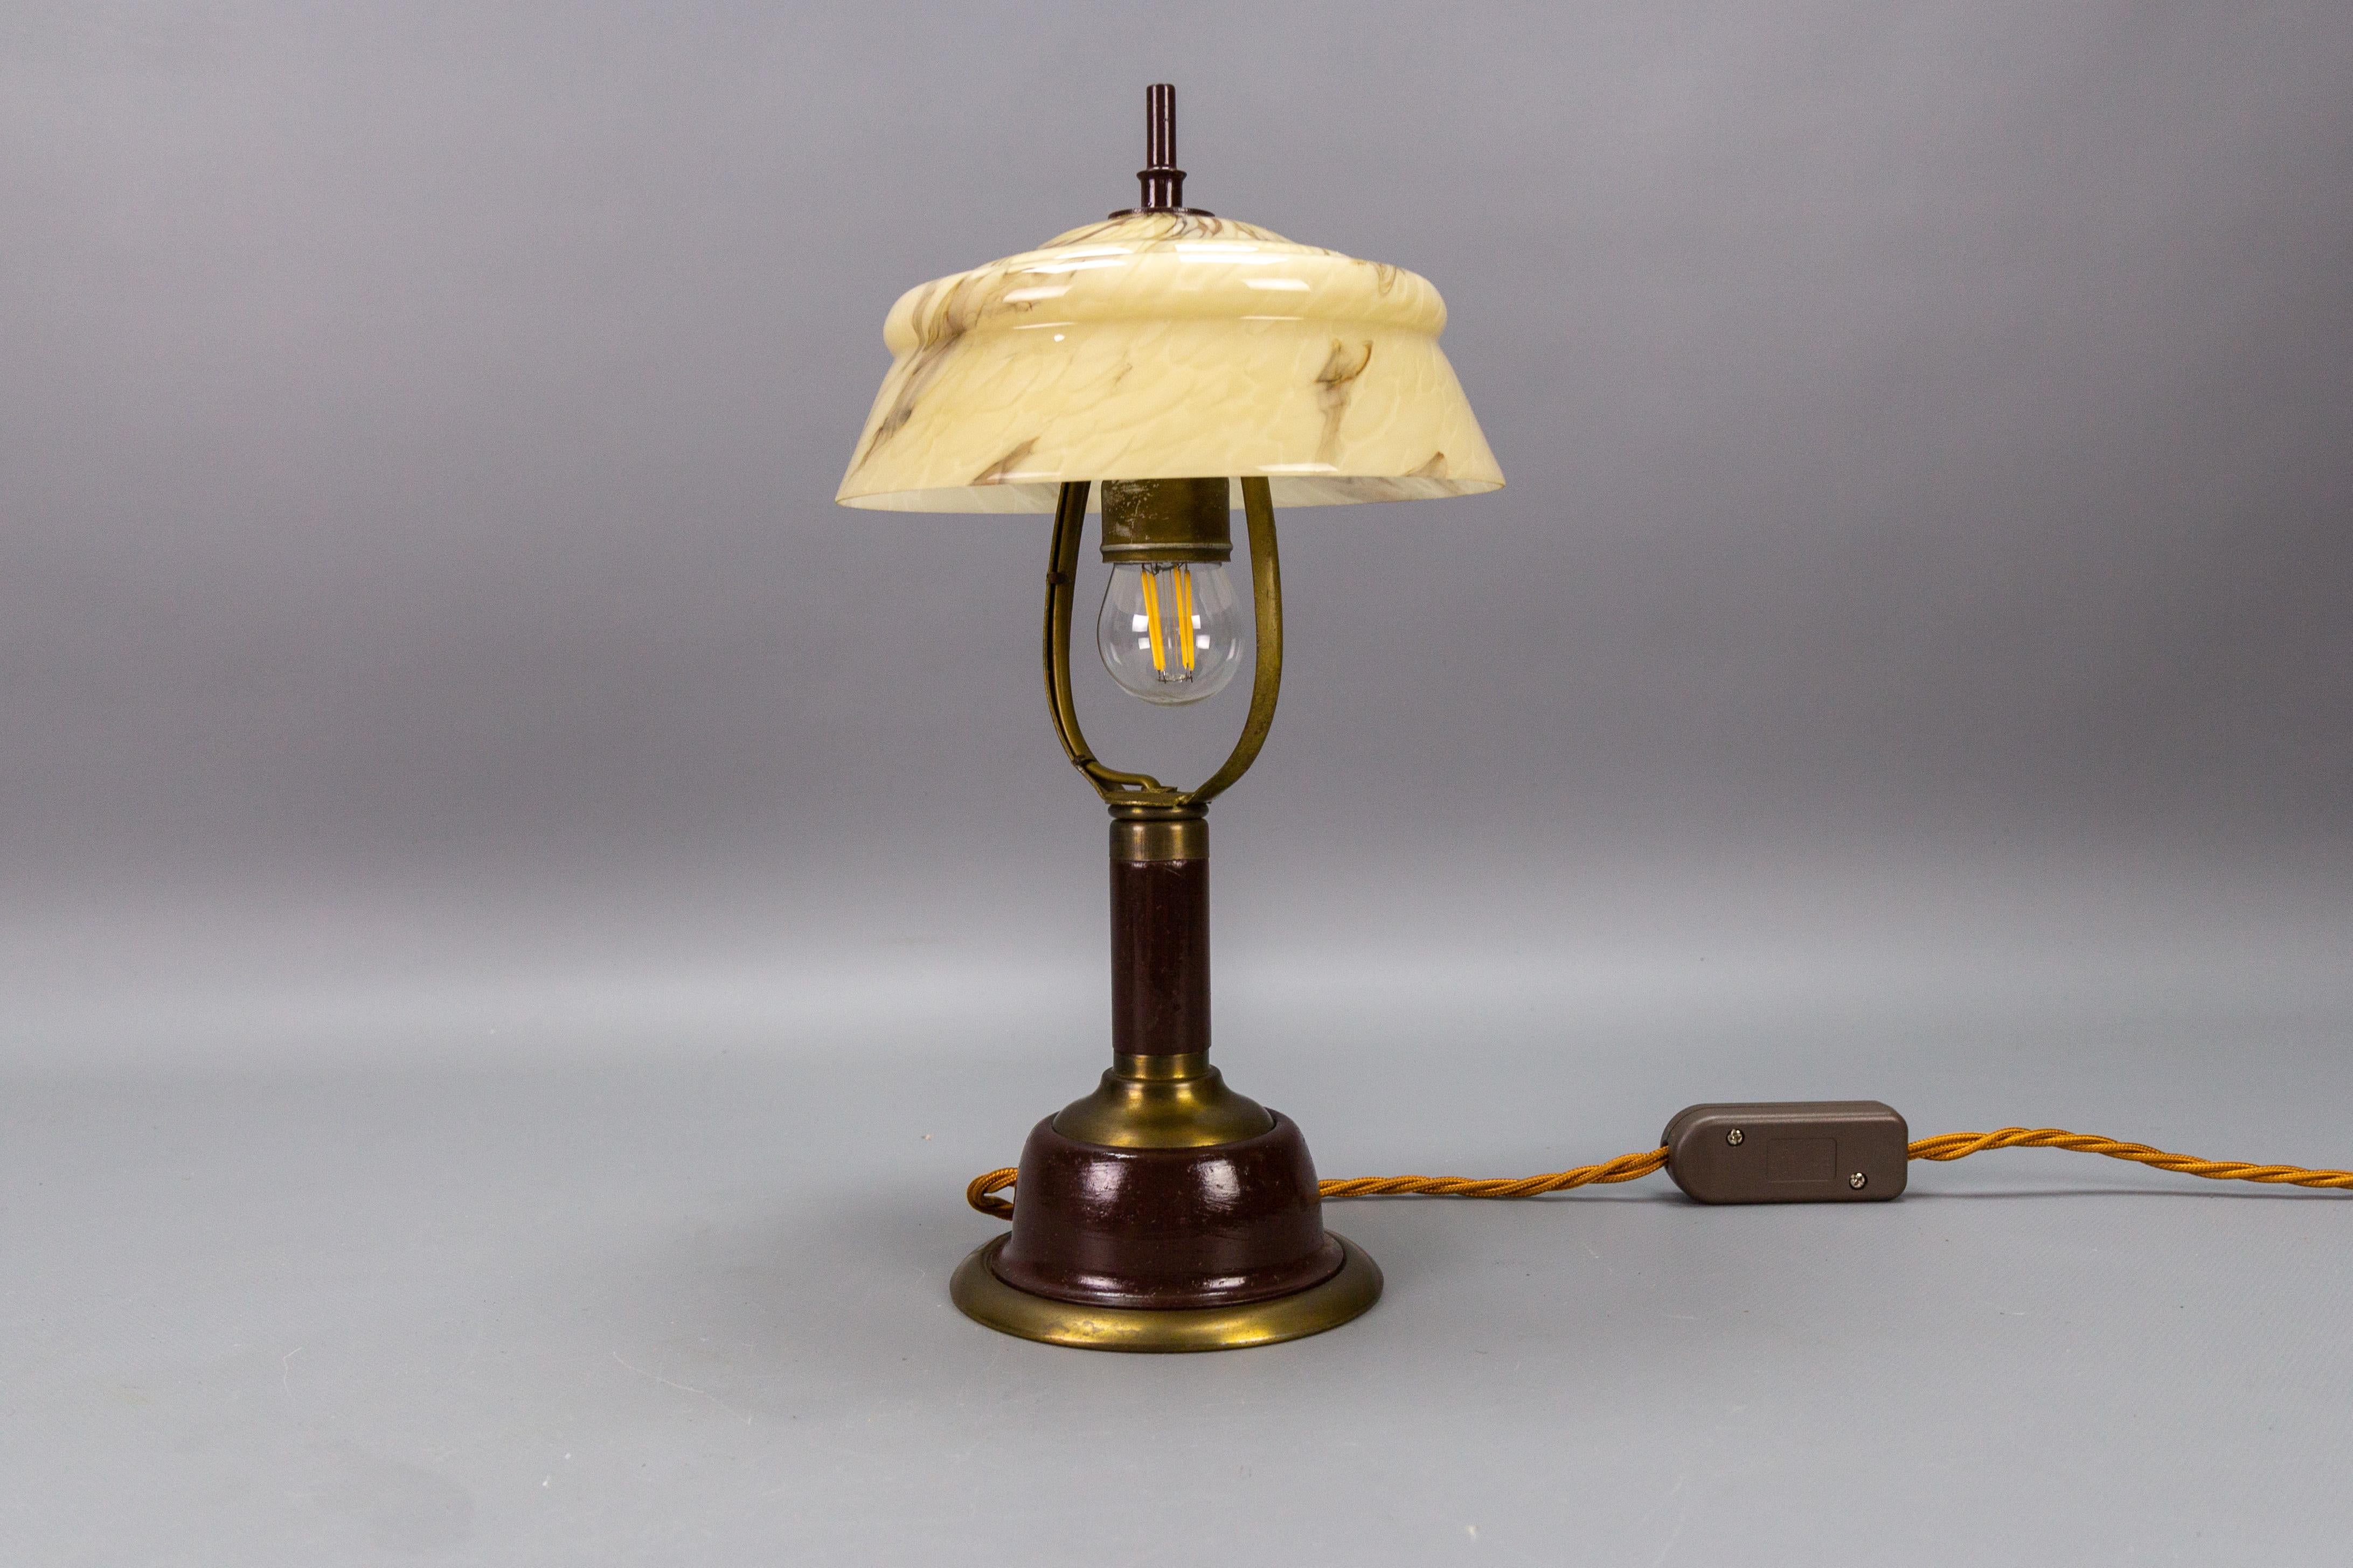 Lampe de table réglable vintage en verre marbré et métal, Allemagne, circa 1950.
Cette charmante lampe de table ou de bureau de style Art déco présente un corps en métal de couleur marron et laiton avec un abat-jour en verre marbré - l'abat-jour en